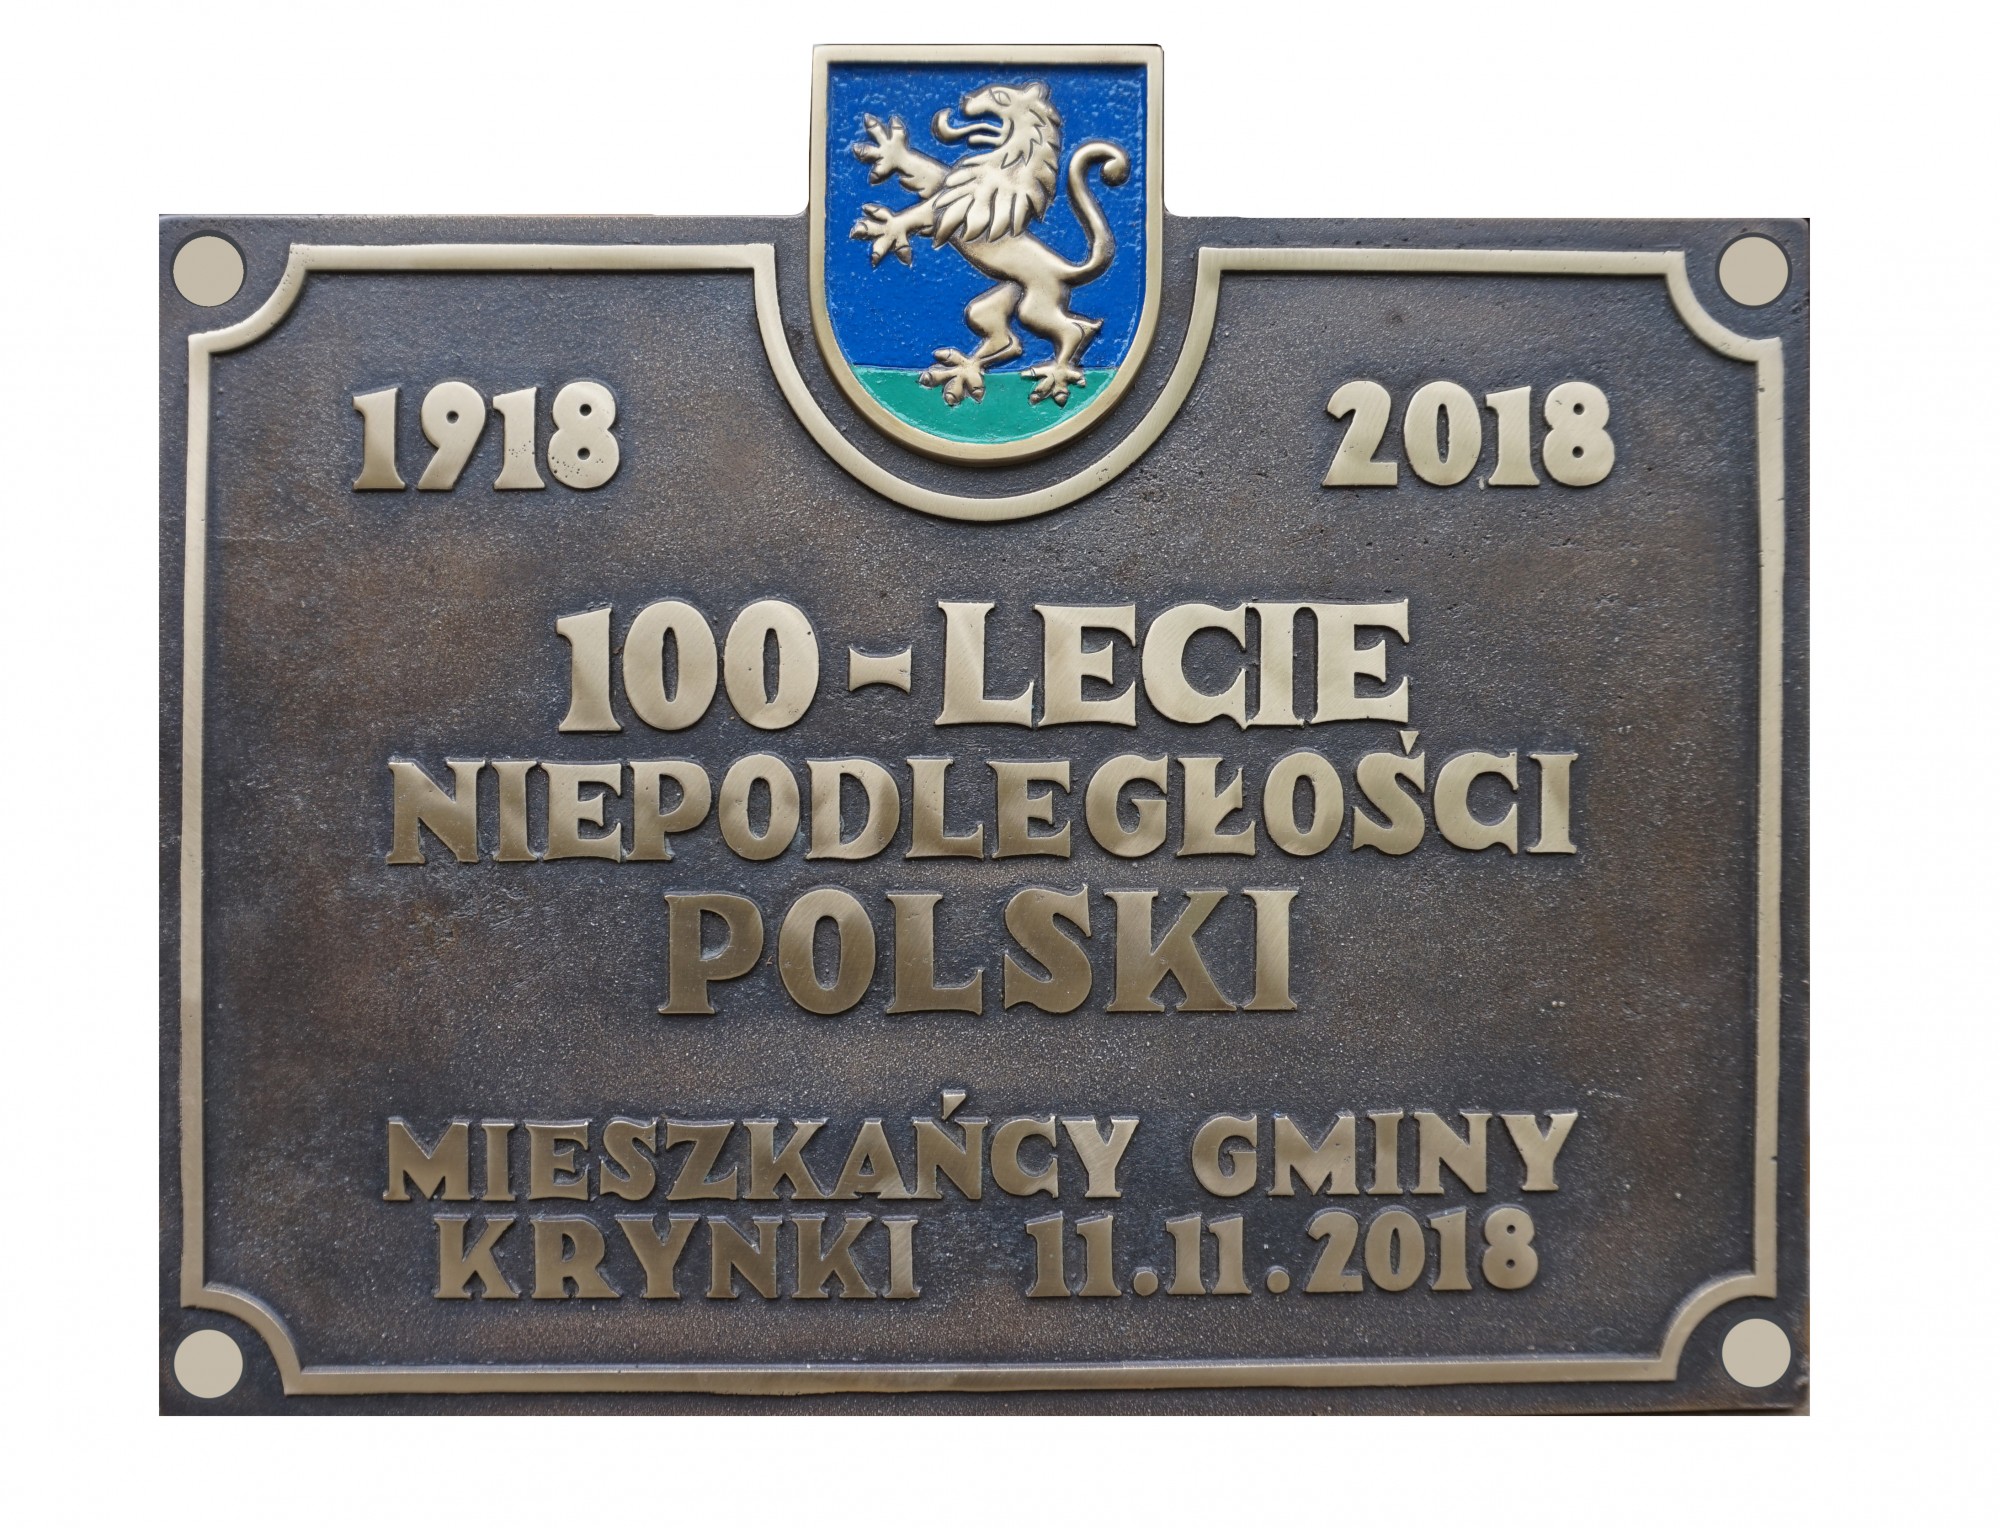 TABLICA NIEPODLEGŁOŚCIOWA,  tablica okolicznościowa wykonana z okazji odzyskania przez Polskę niepodległości, wym. 32x46 cm; mosiądz cyzelowany,  oksydowany i woskowany; 